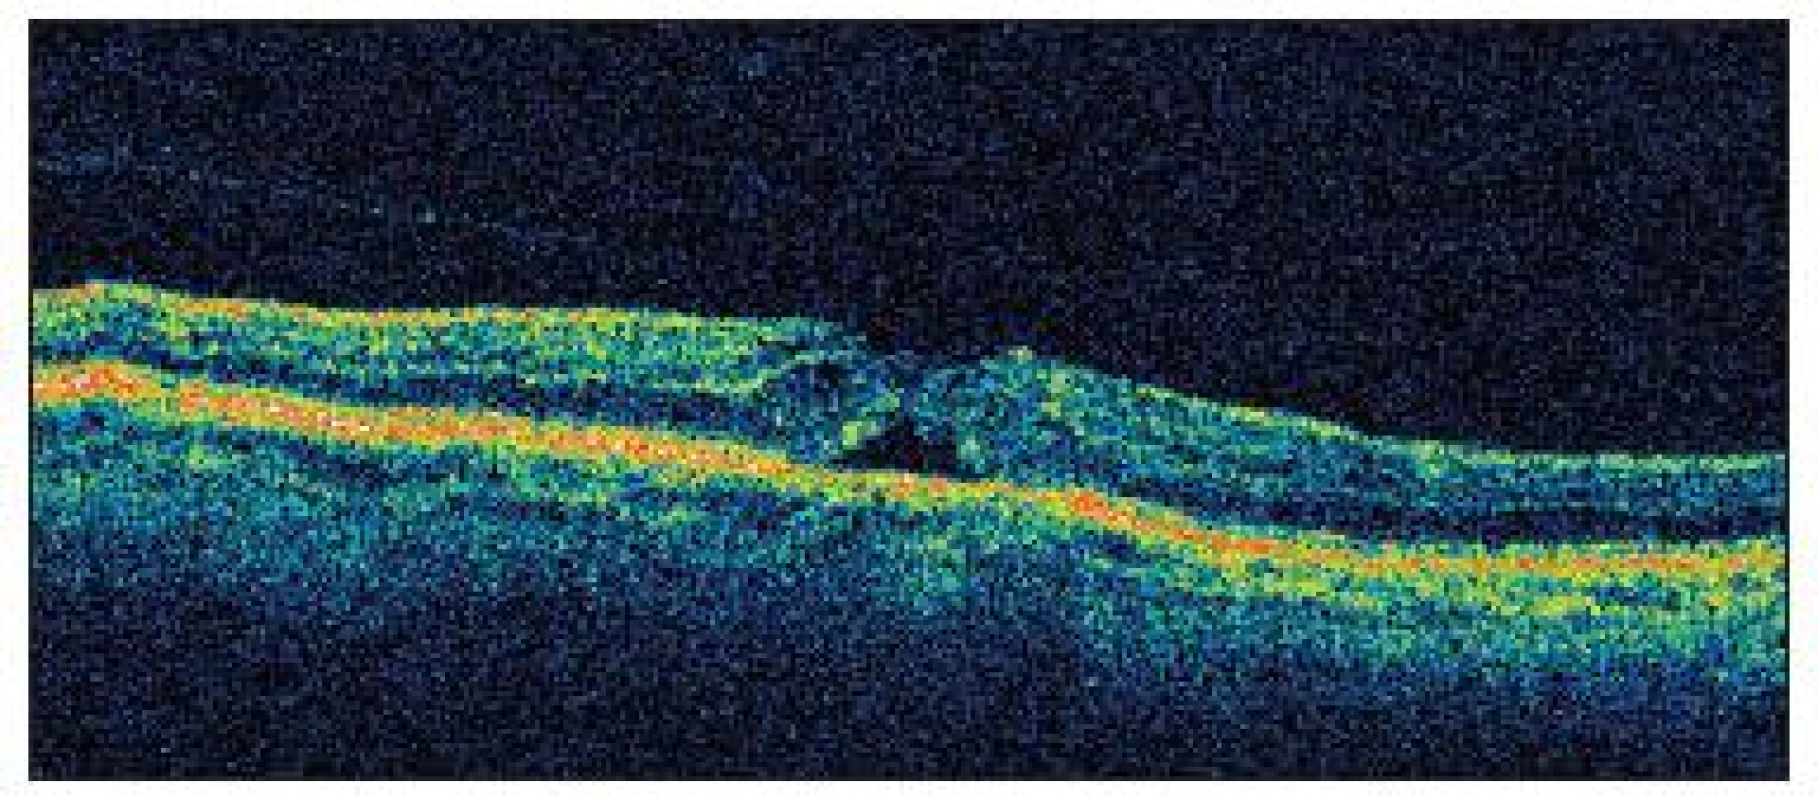 OCT nález u pacienta č.1 nasledujúci deň po operácii katarakty so zobrazením priblíženia okrajov neurosenzorickej sietnice a pravdepodobne s nakopením glie na vnútornom povrchu sietnice, stále je evidentná vitreoretinálna adhézia s trakciou